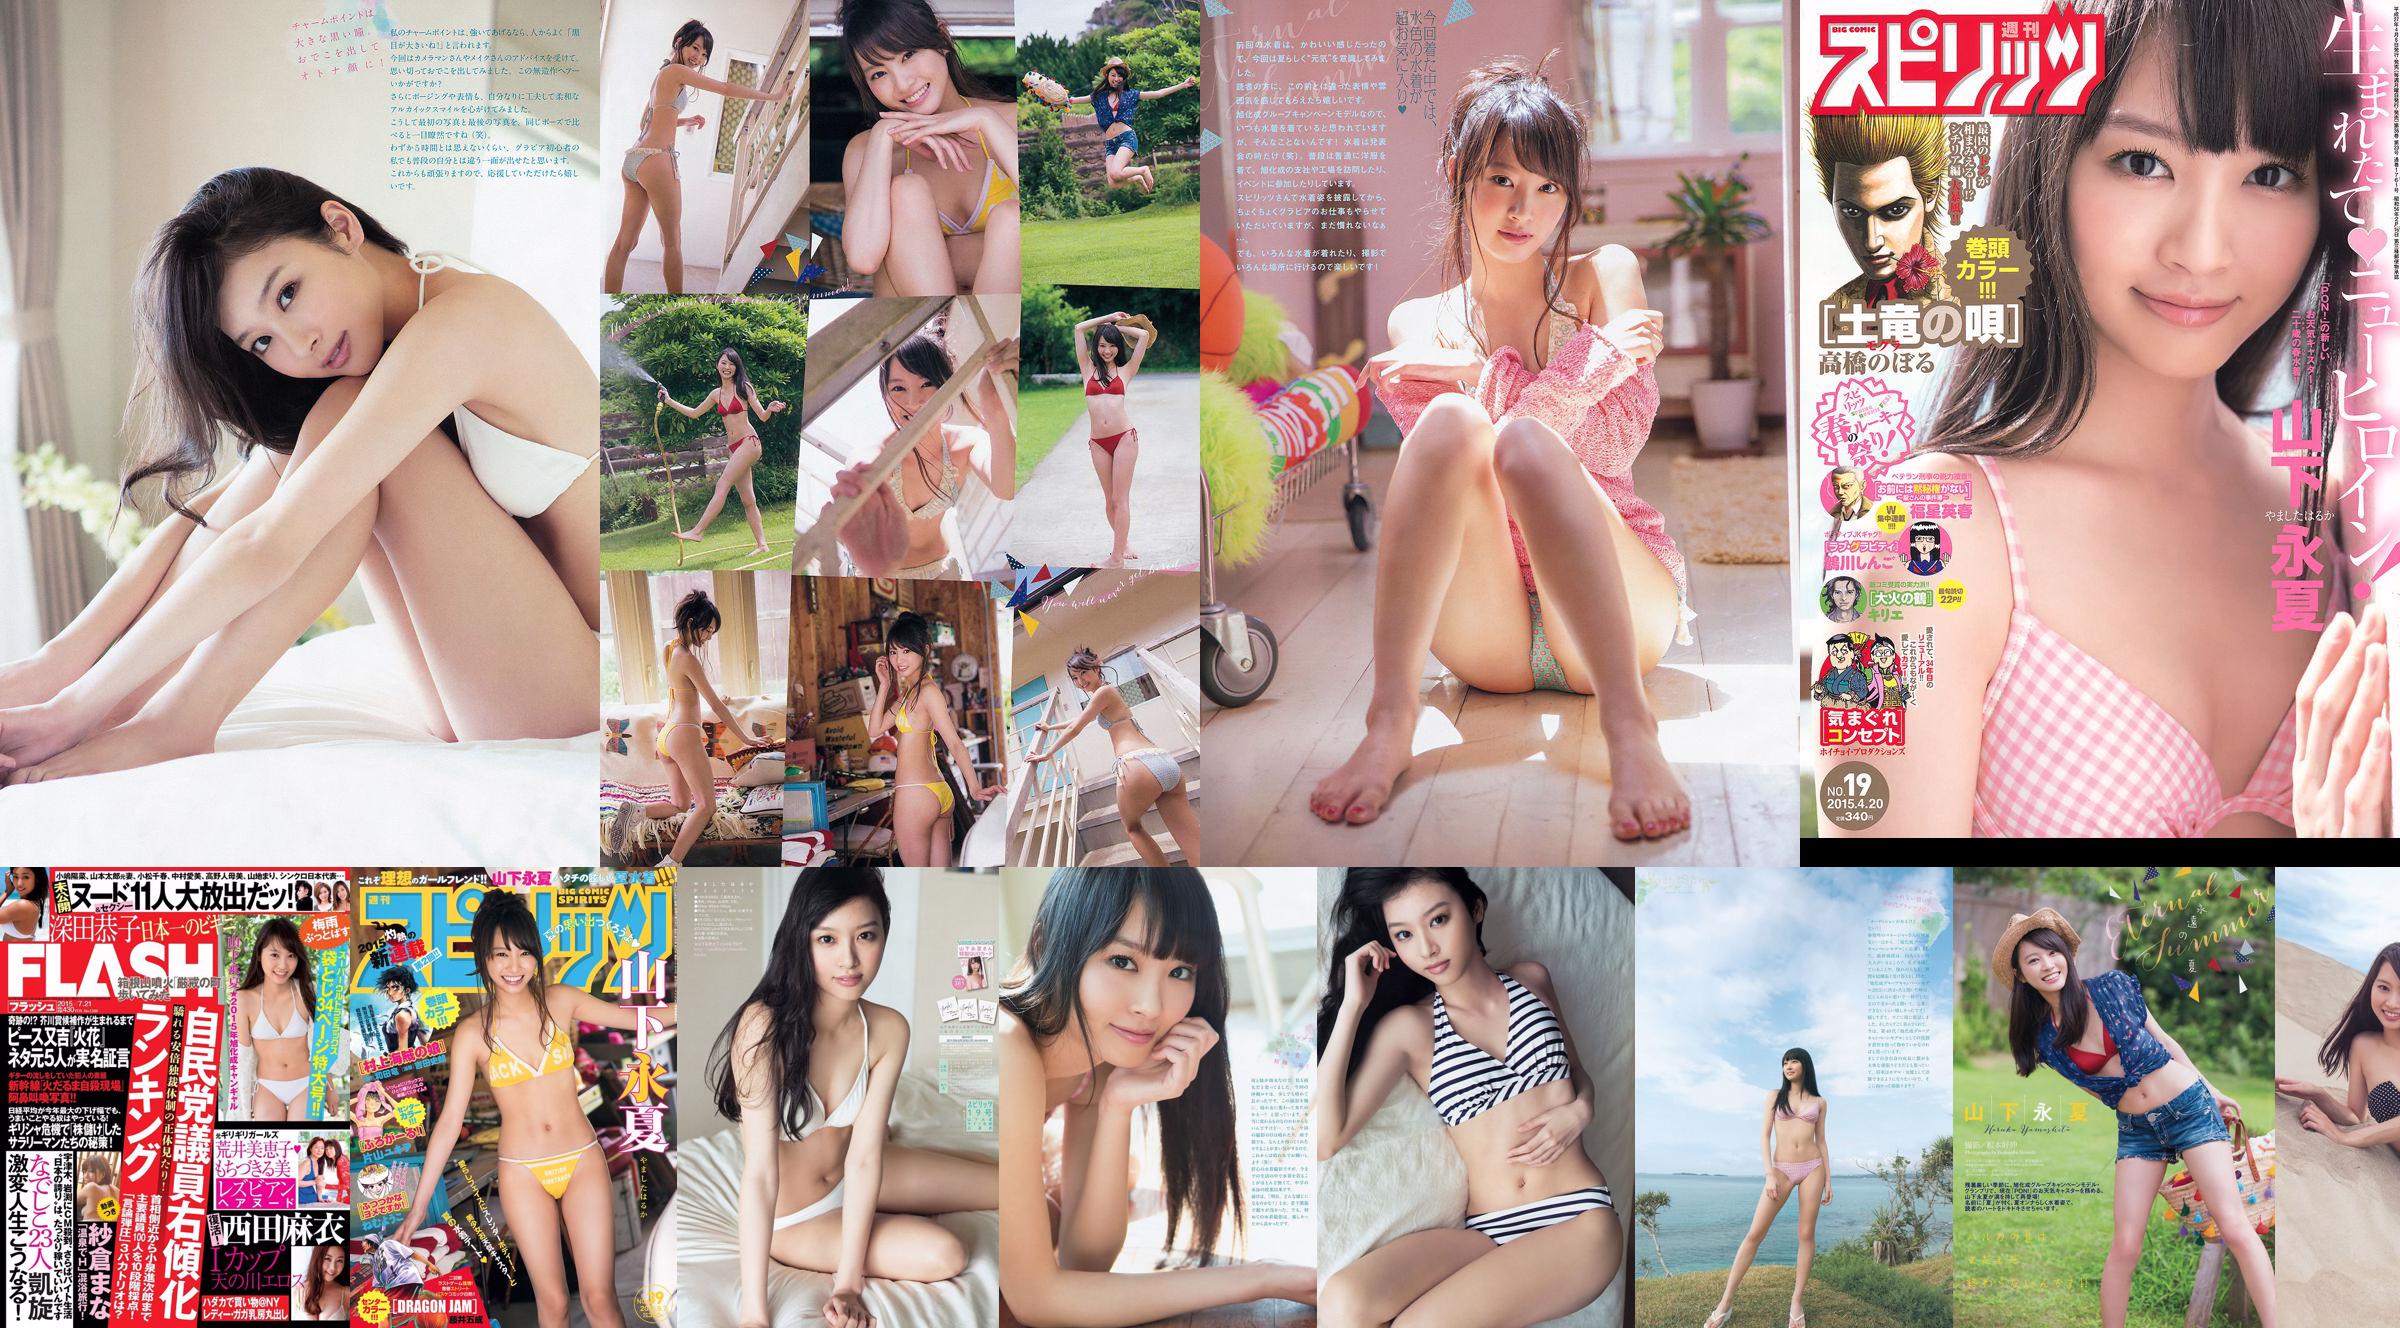 [Wöchentliche große Comic-Spirituosen] Yamashita Yongxia 2015 Nr. 39 Fotomagazin No.40eebb Seite 3